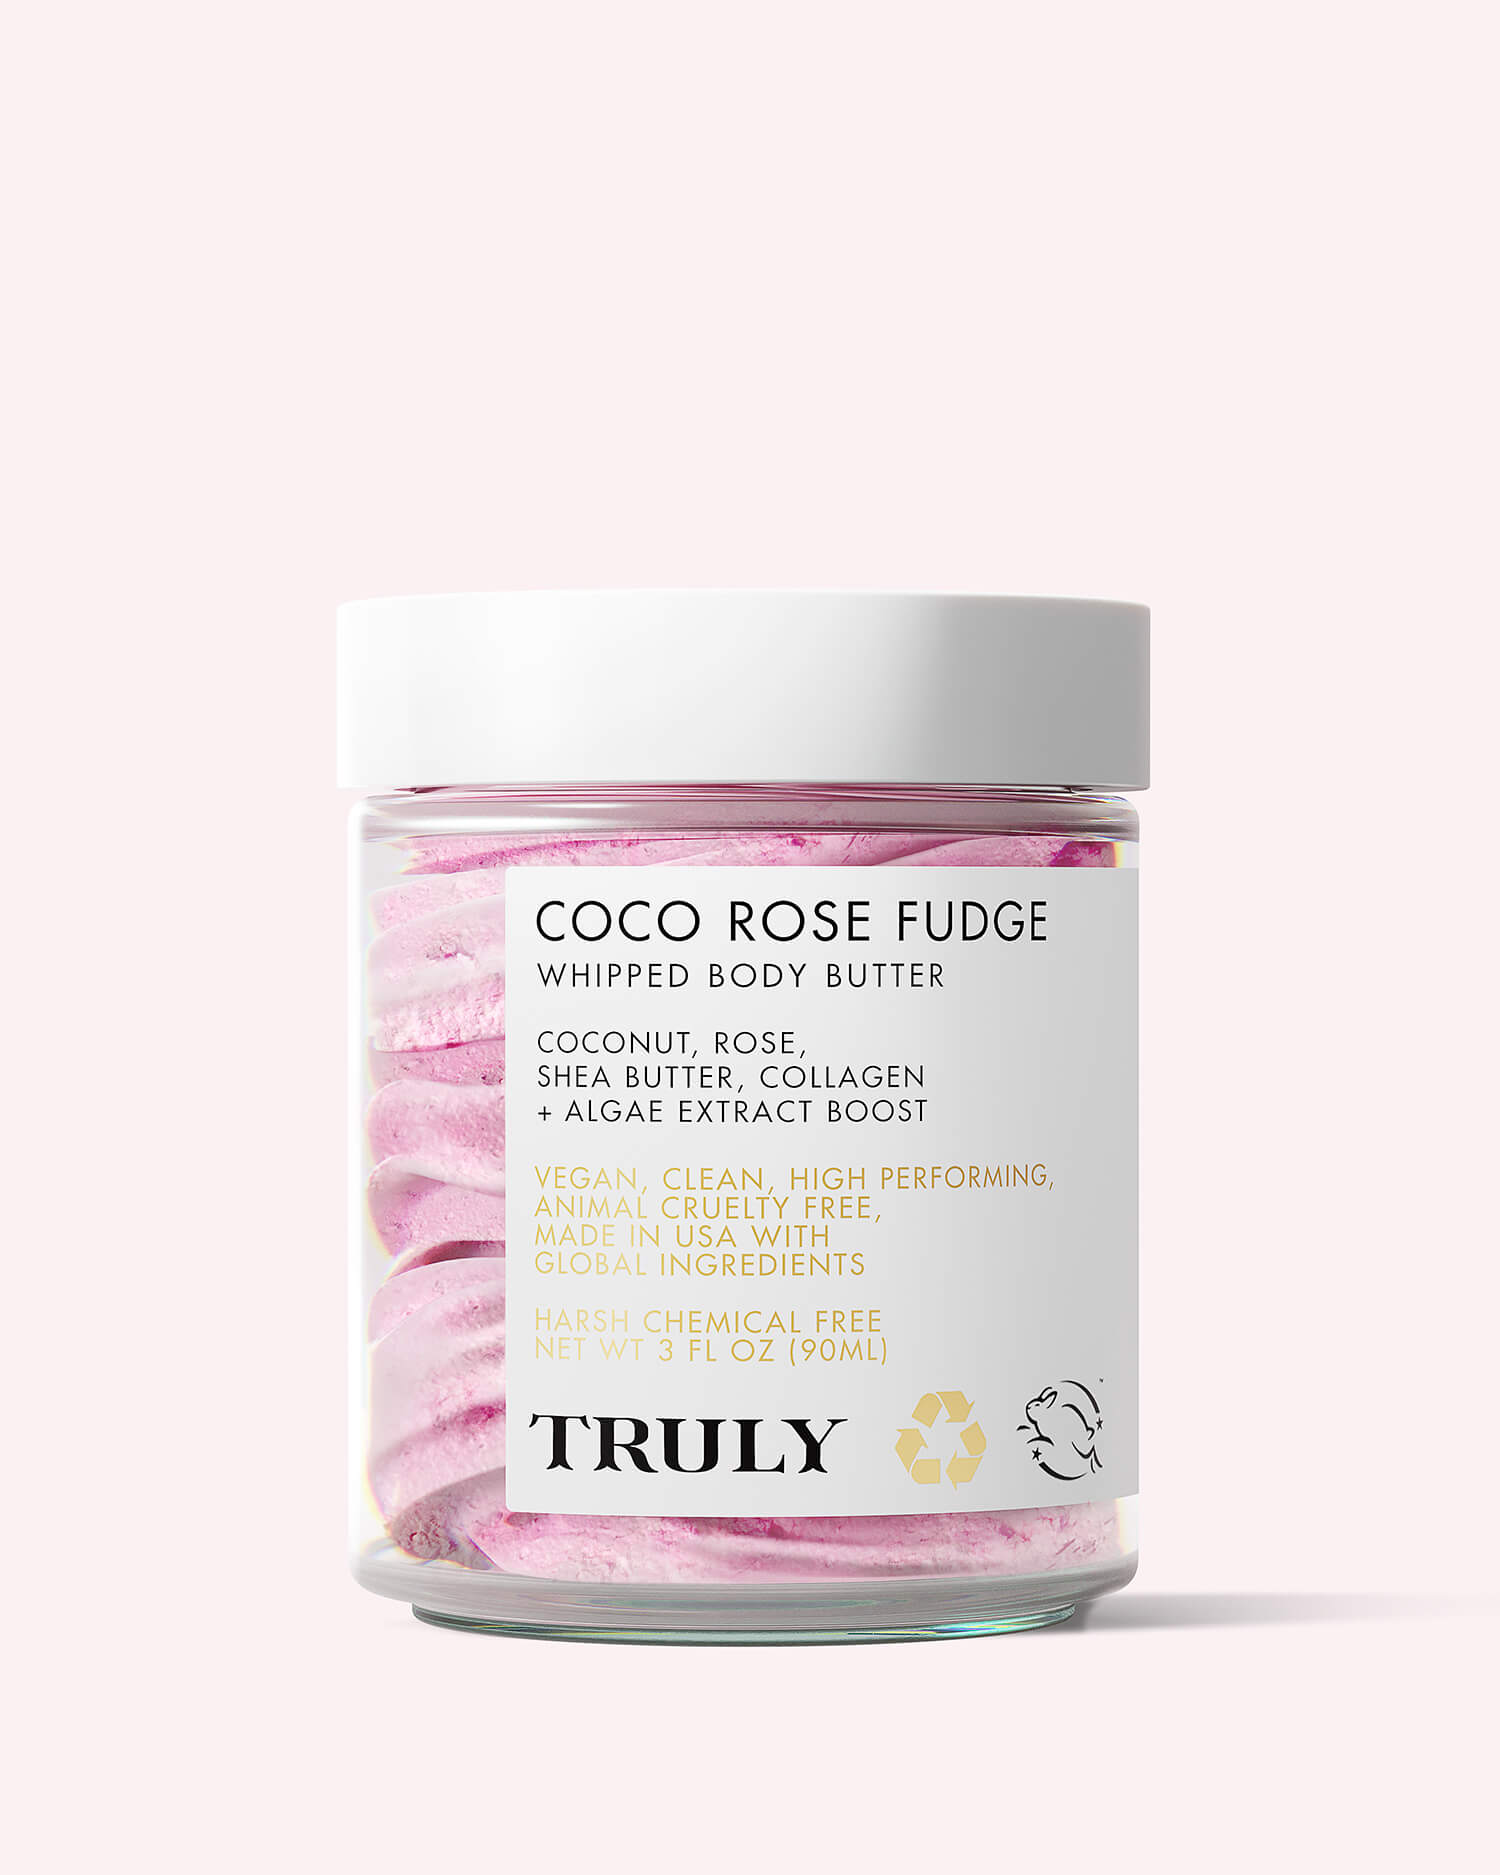 Coco Rose Body Oil – Non(e)such